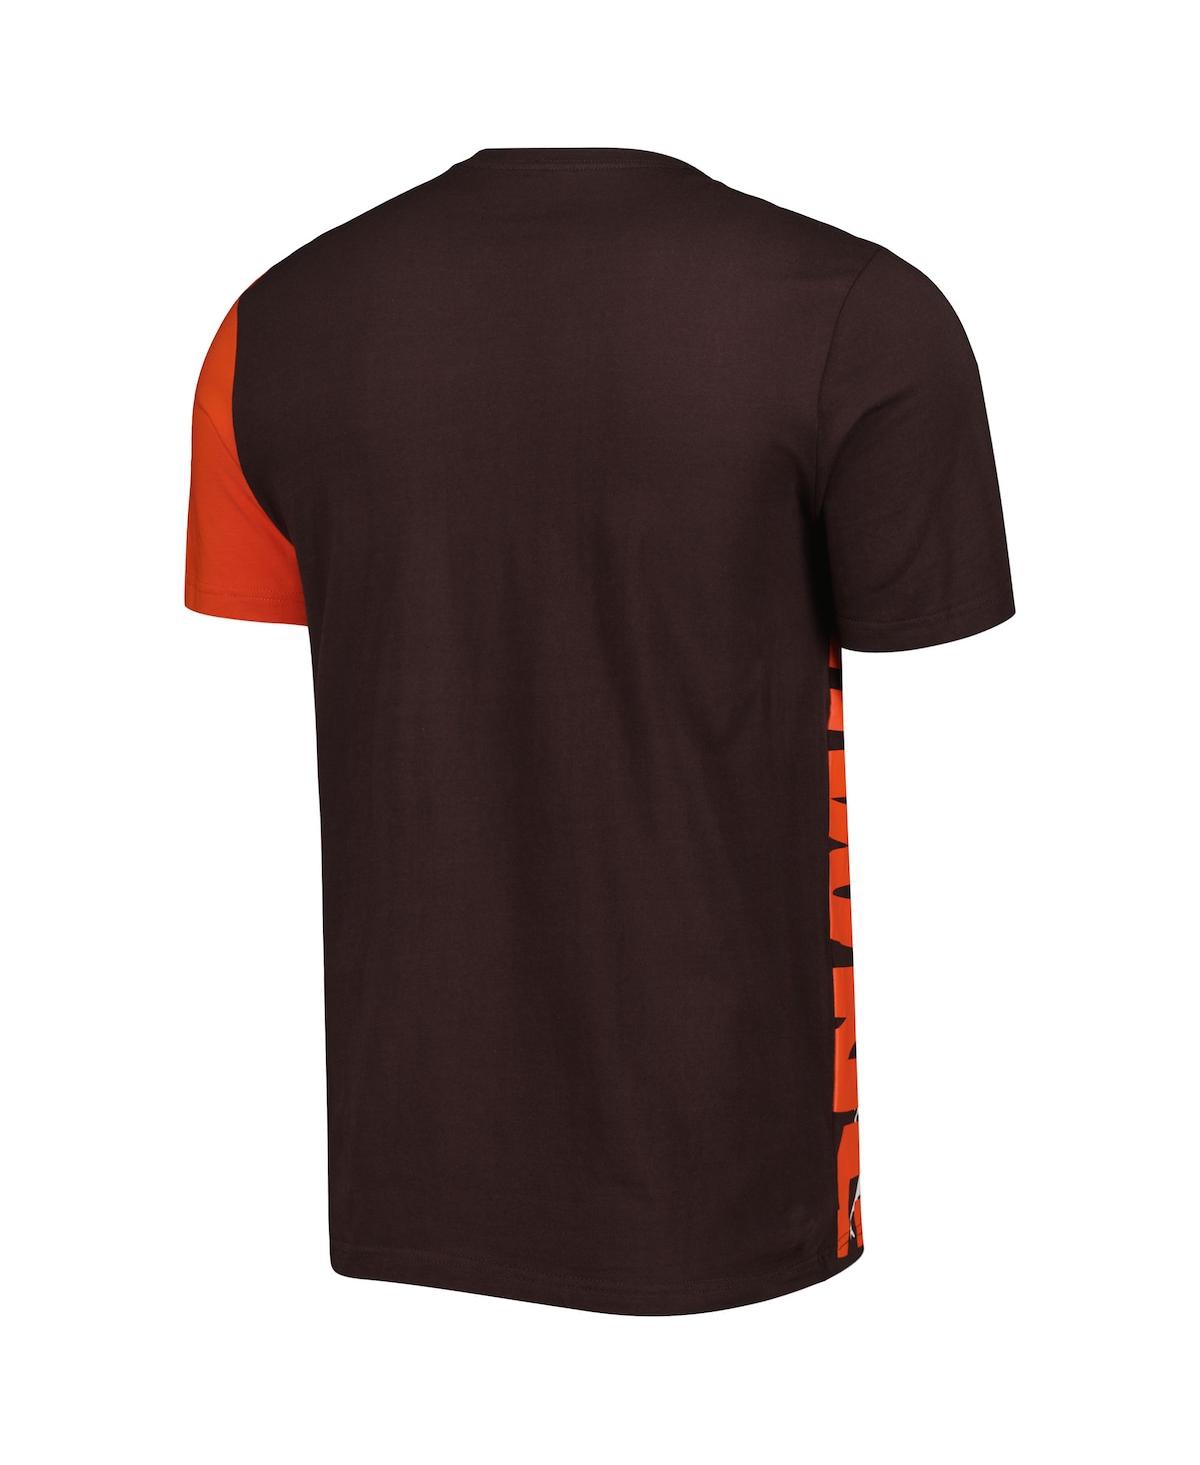 Shop Starter Men's  Brown Cleveland Browns Extreme Defender T-shirt